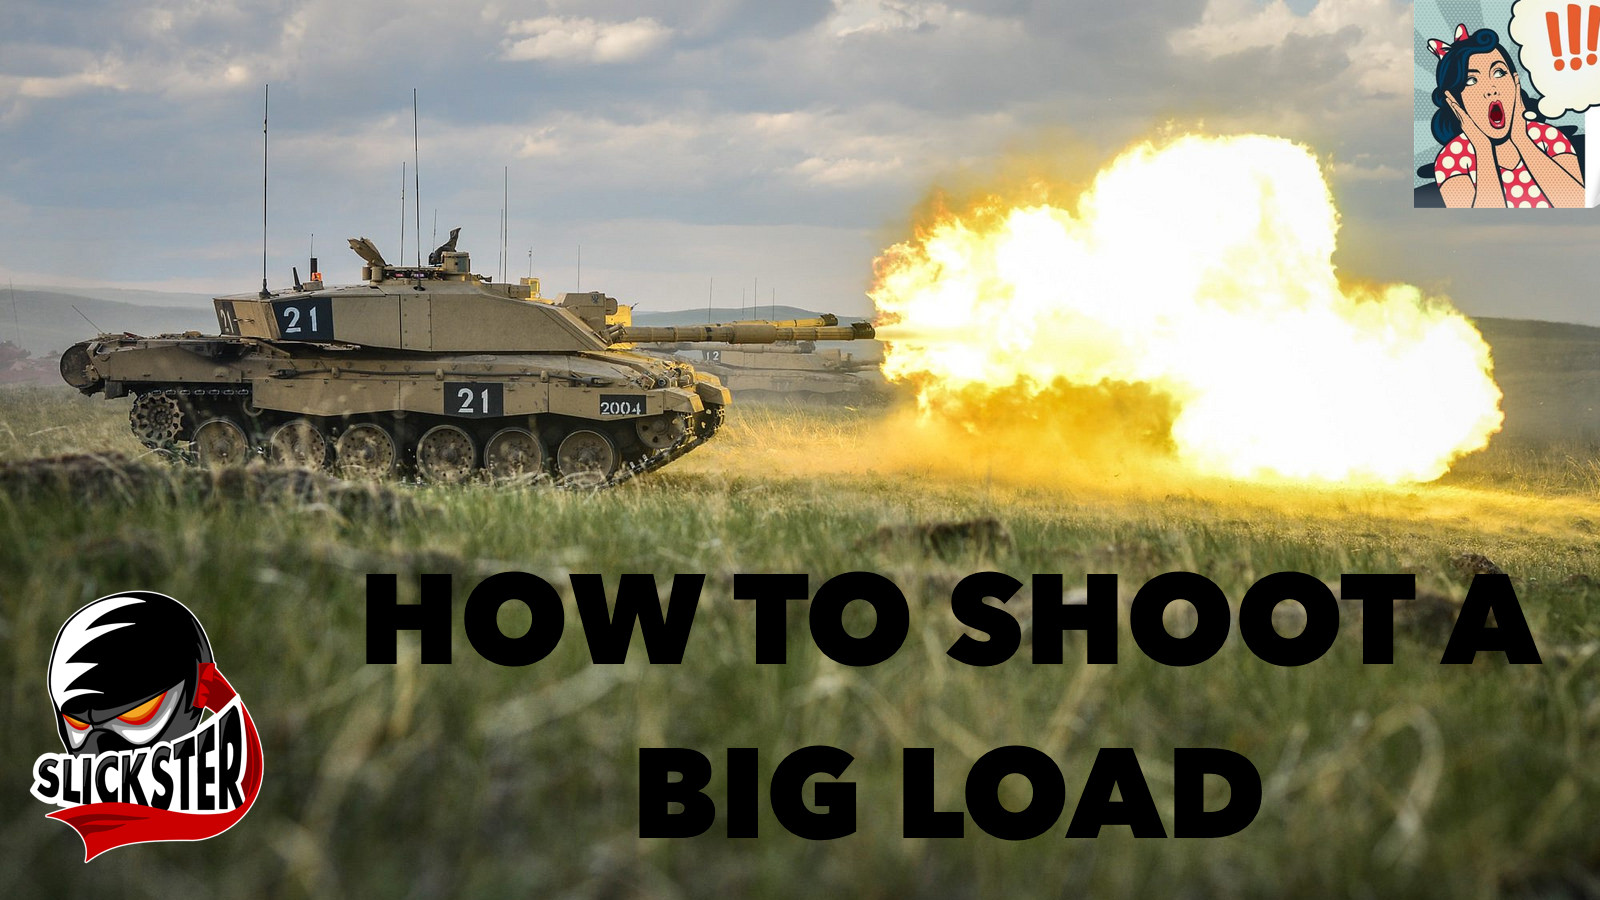 ahmad mossa recommends shoot a big load pic